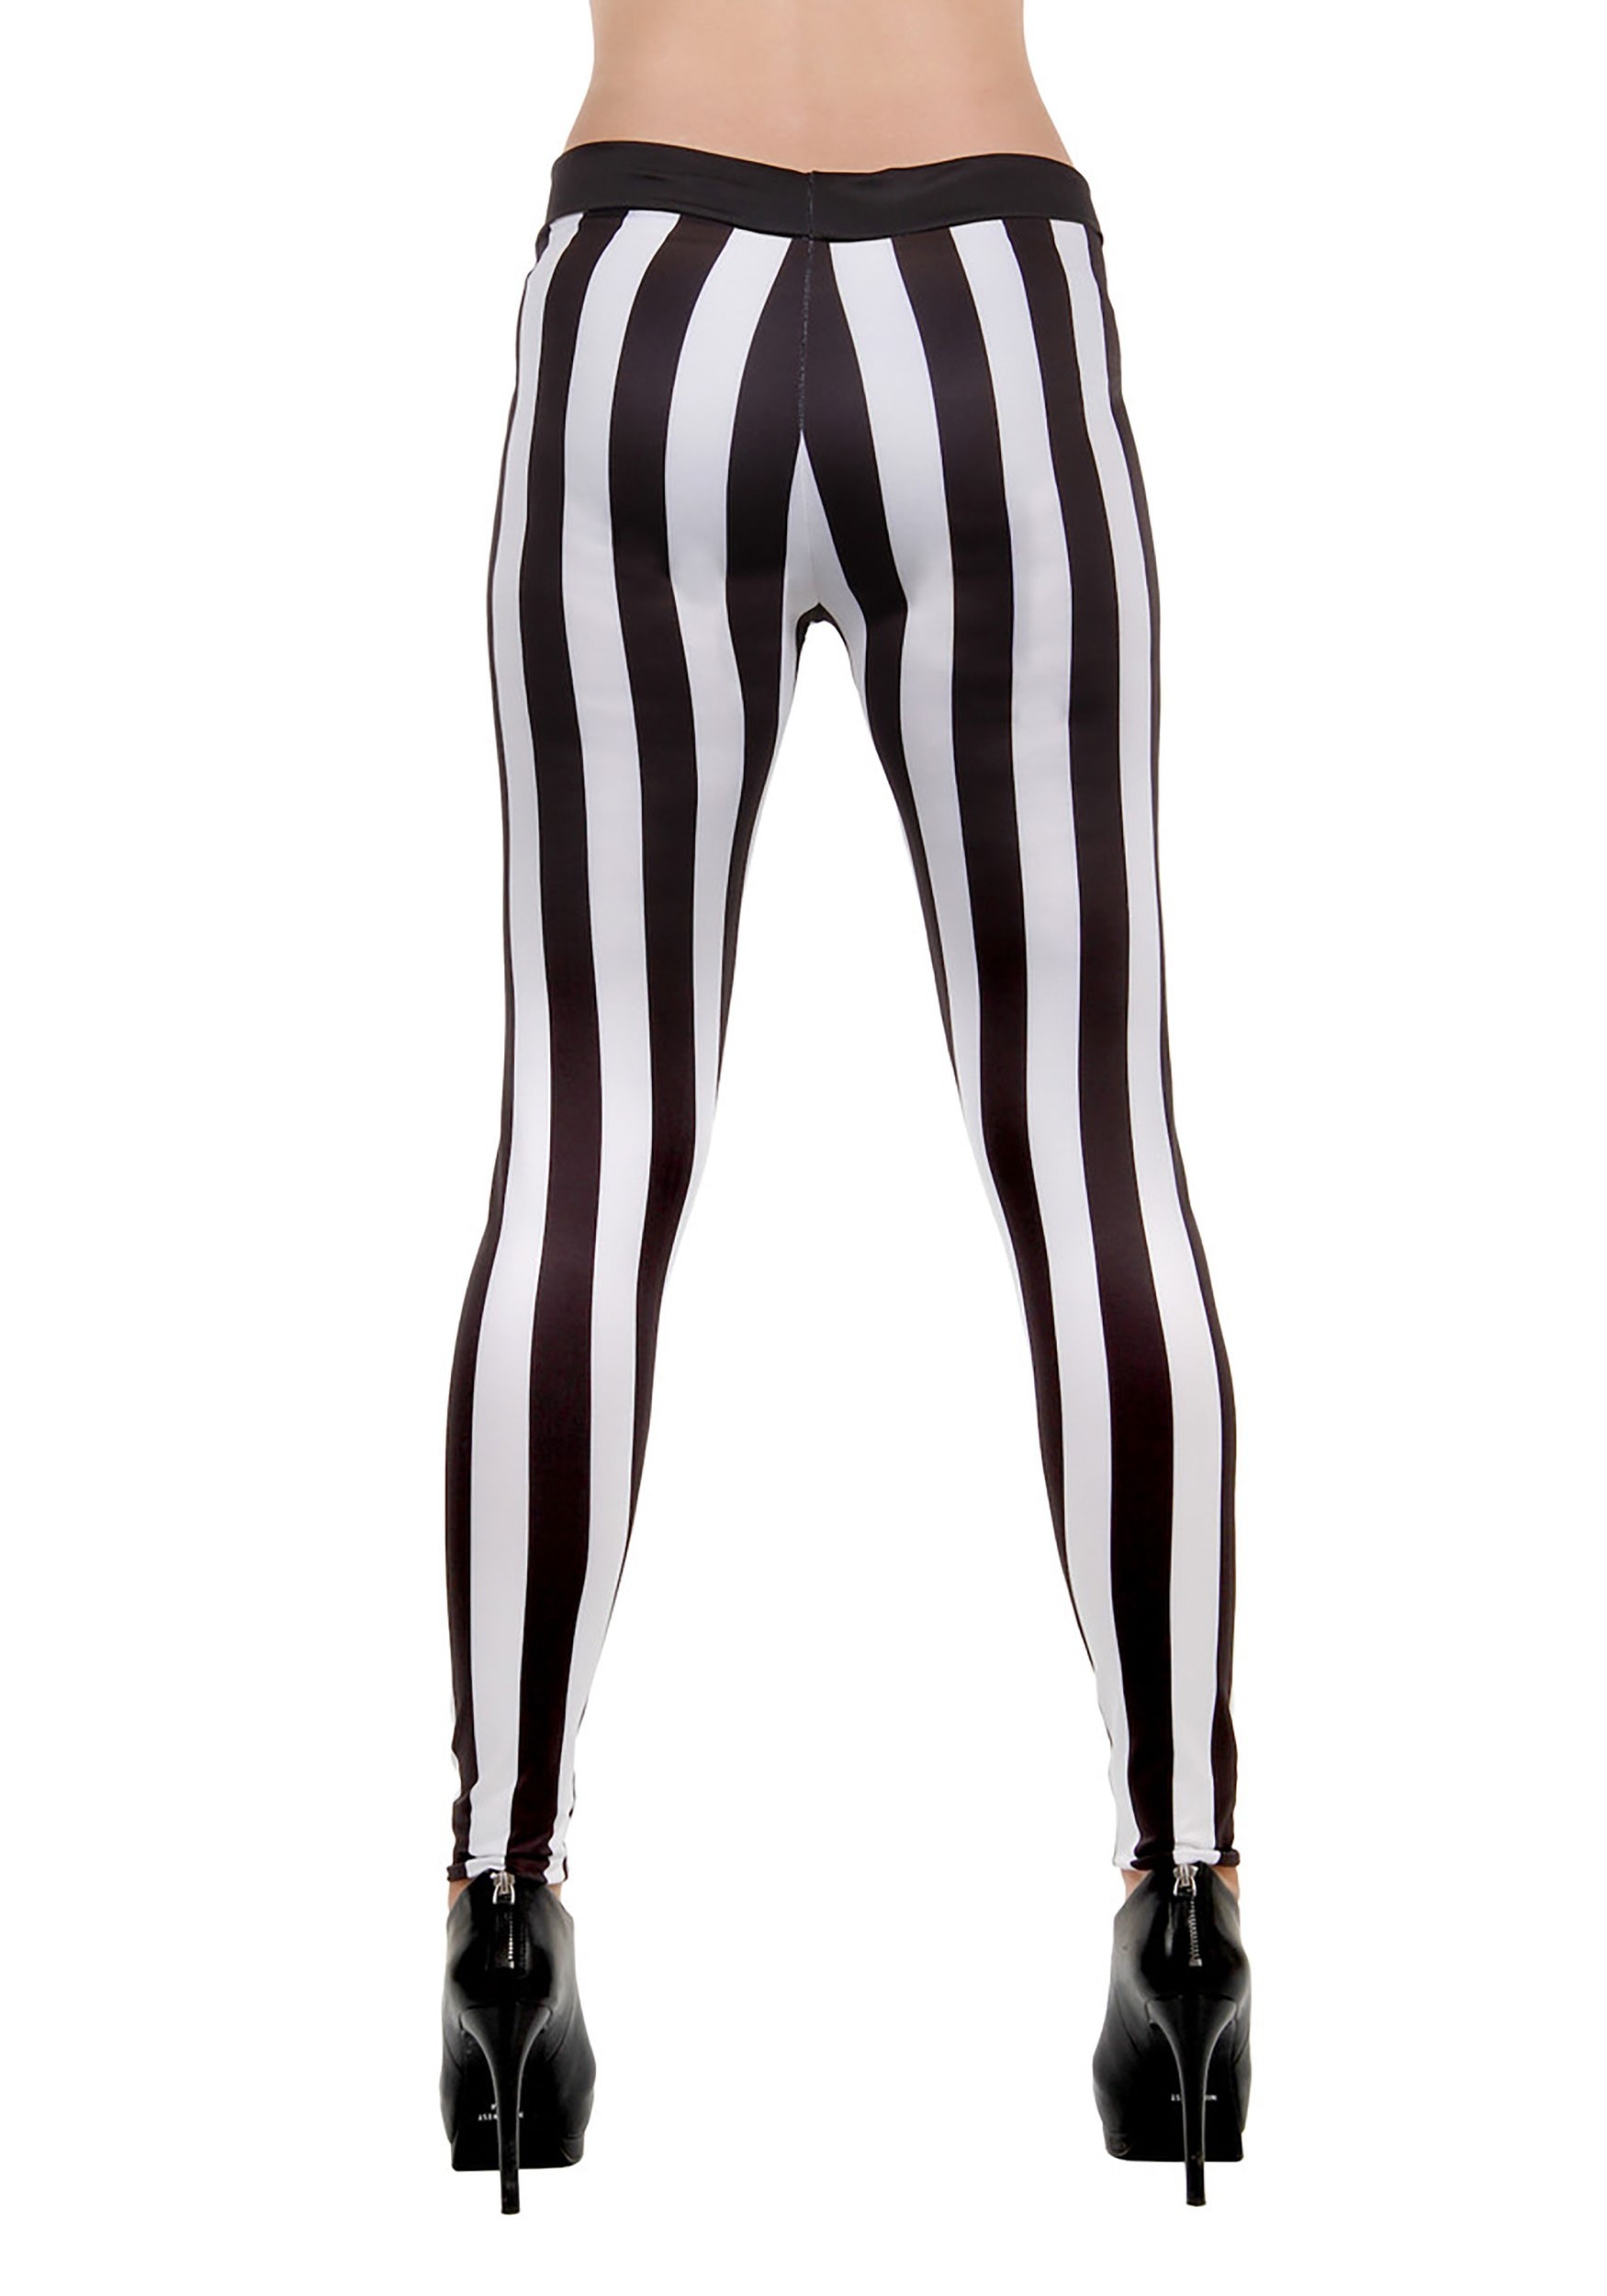 Vertical Striped Black&White 3/4 Length / Full Length LEGGINGS S